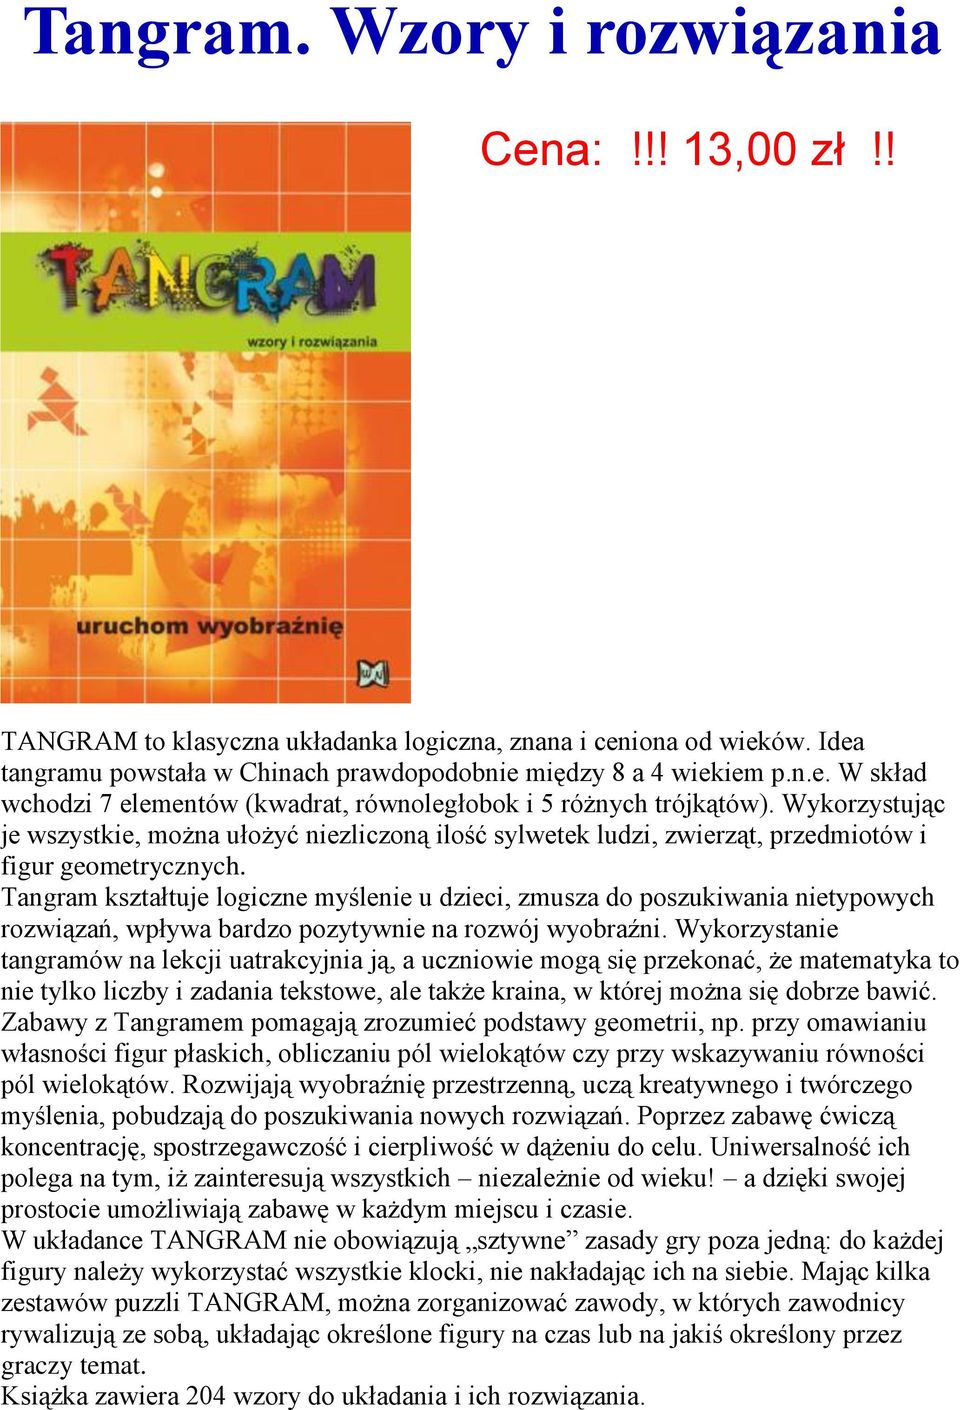 Tangram kształtuje logiczne myślenie u dzieci, zmusza do poszukiwania nietypowych rozwiązań, wpływa bardzo pozytywnie na rozwój wyobraźni.